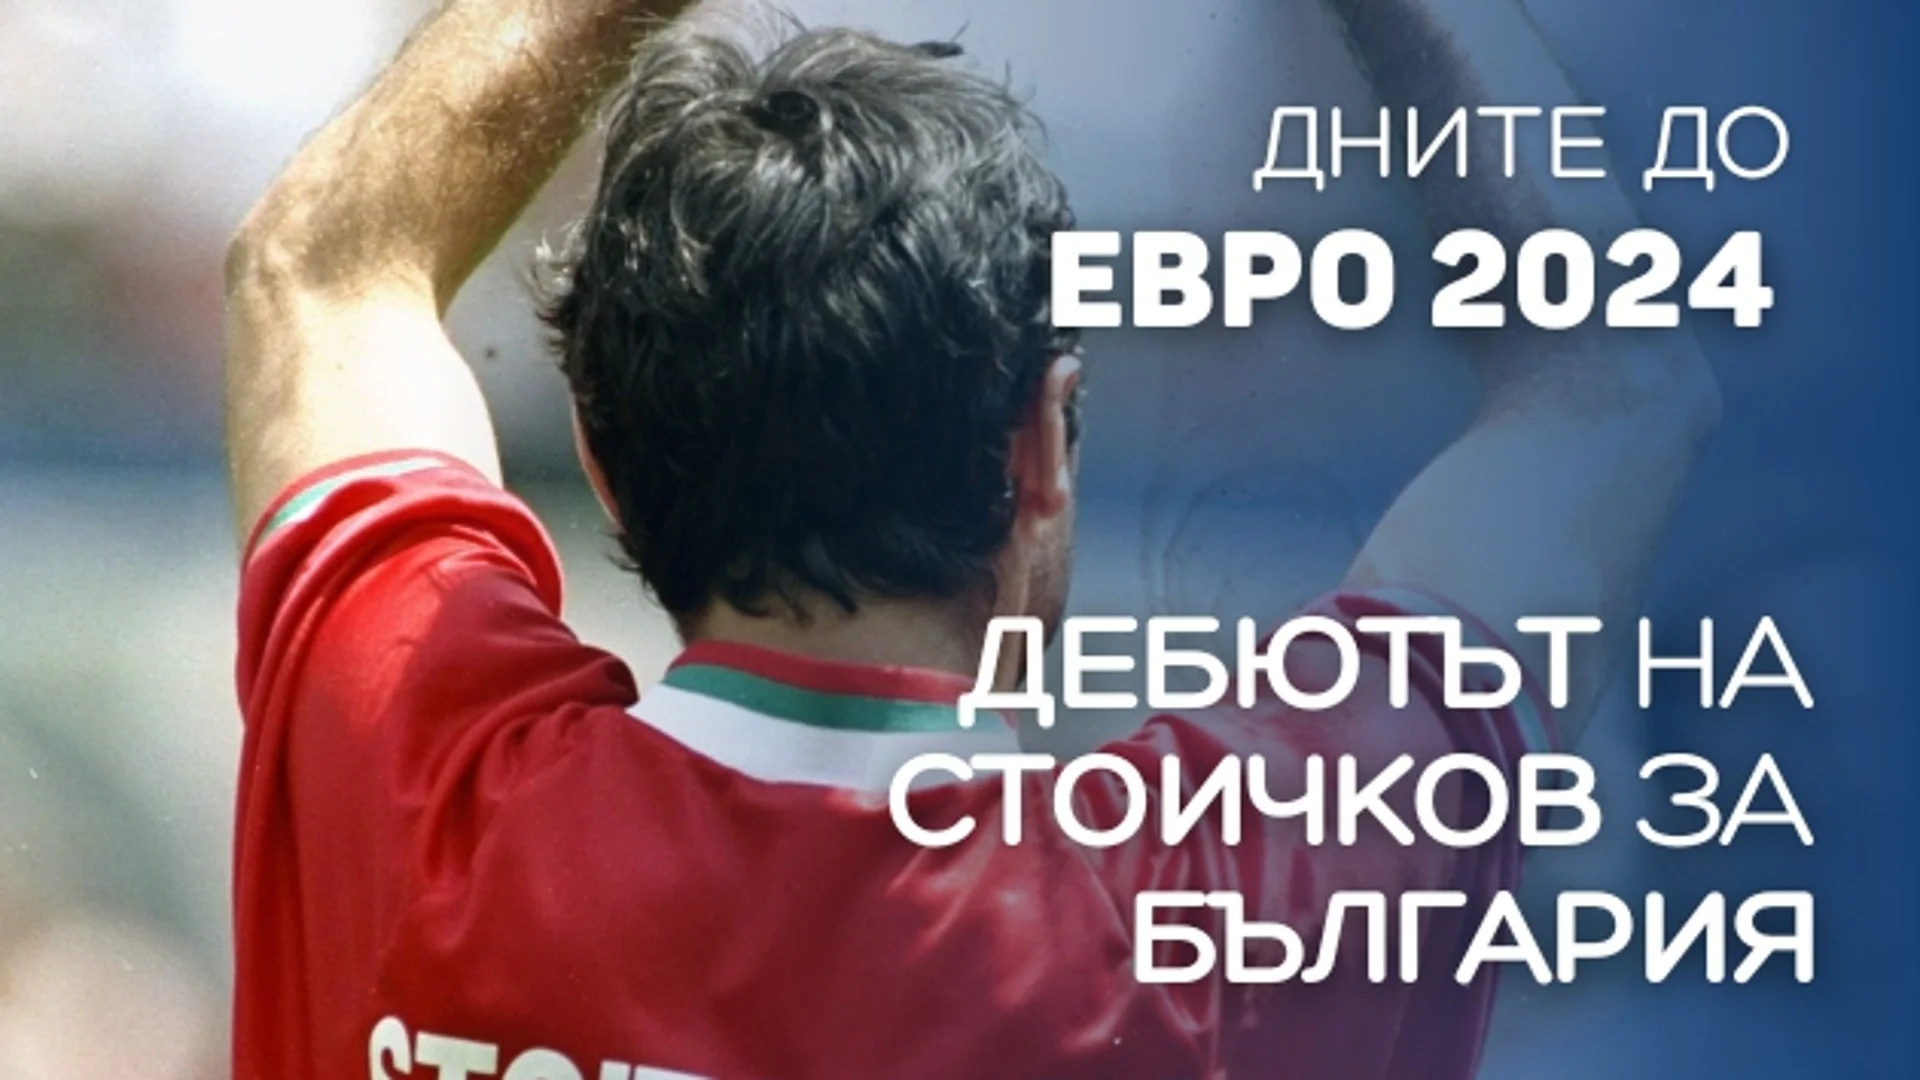 92 дни до ЕВРО 2024: Стоичков шокира световен колос в дебюта си за България (ВИДЕО)